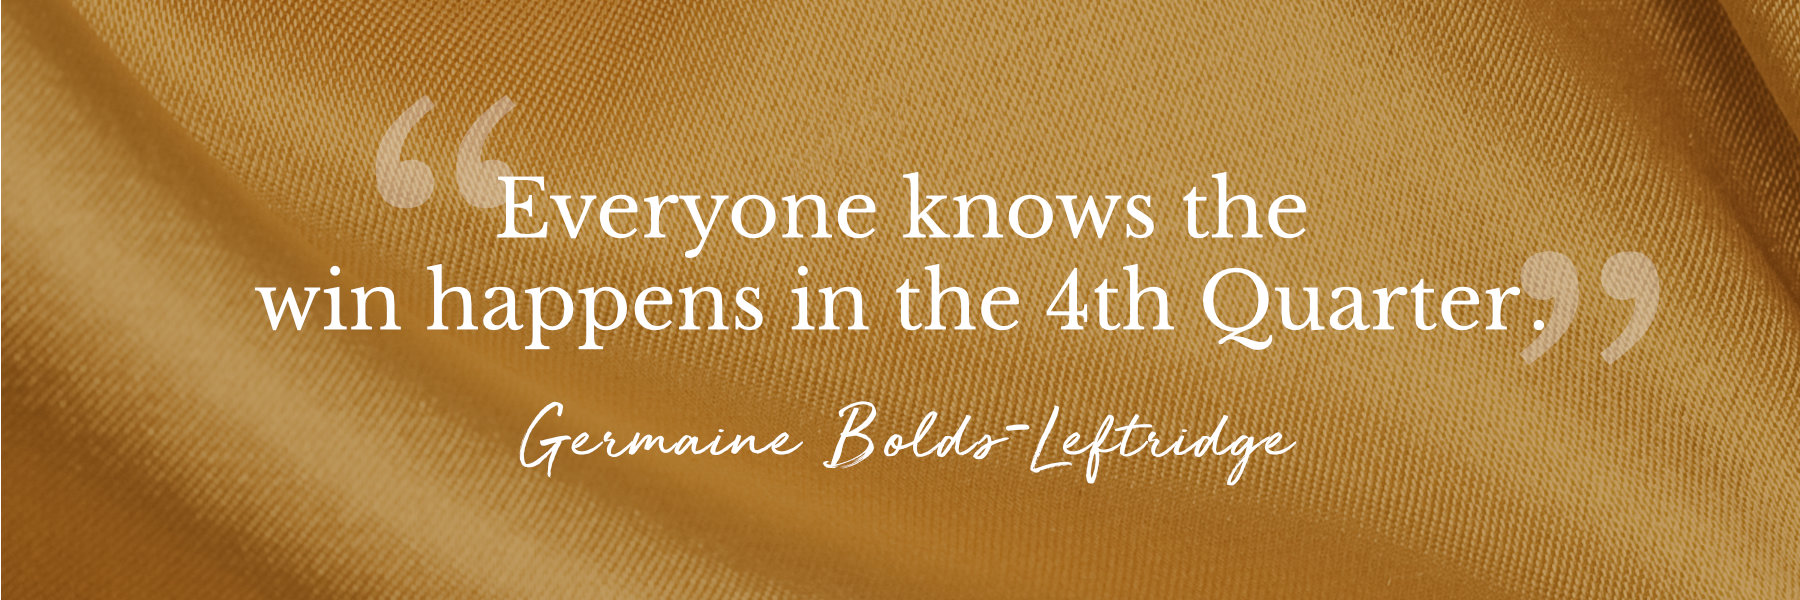 Germaine Bolds-Leftridge quote